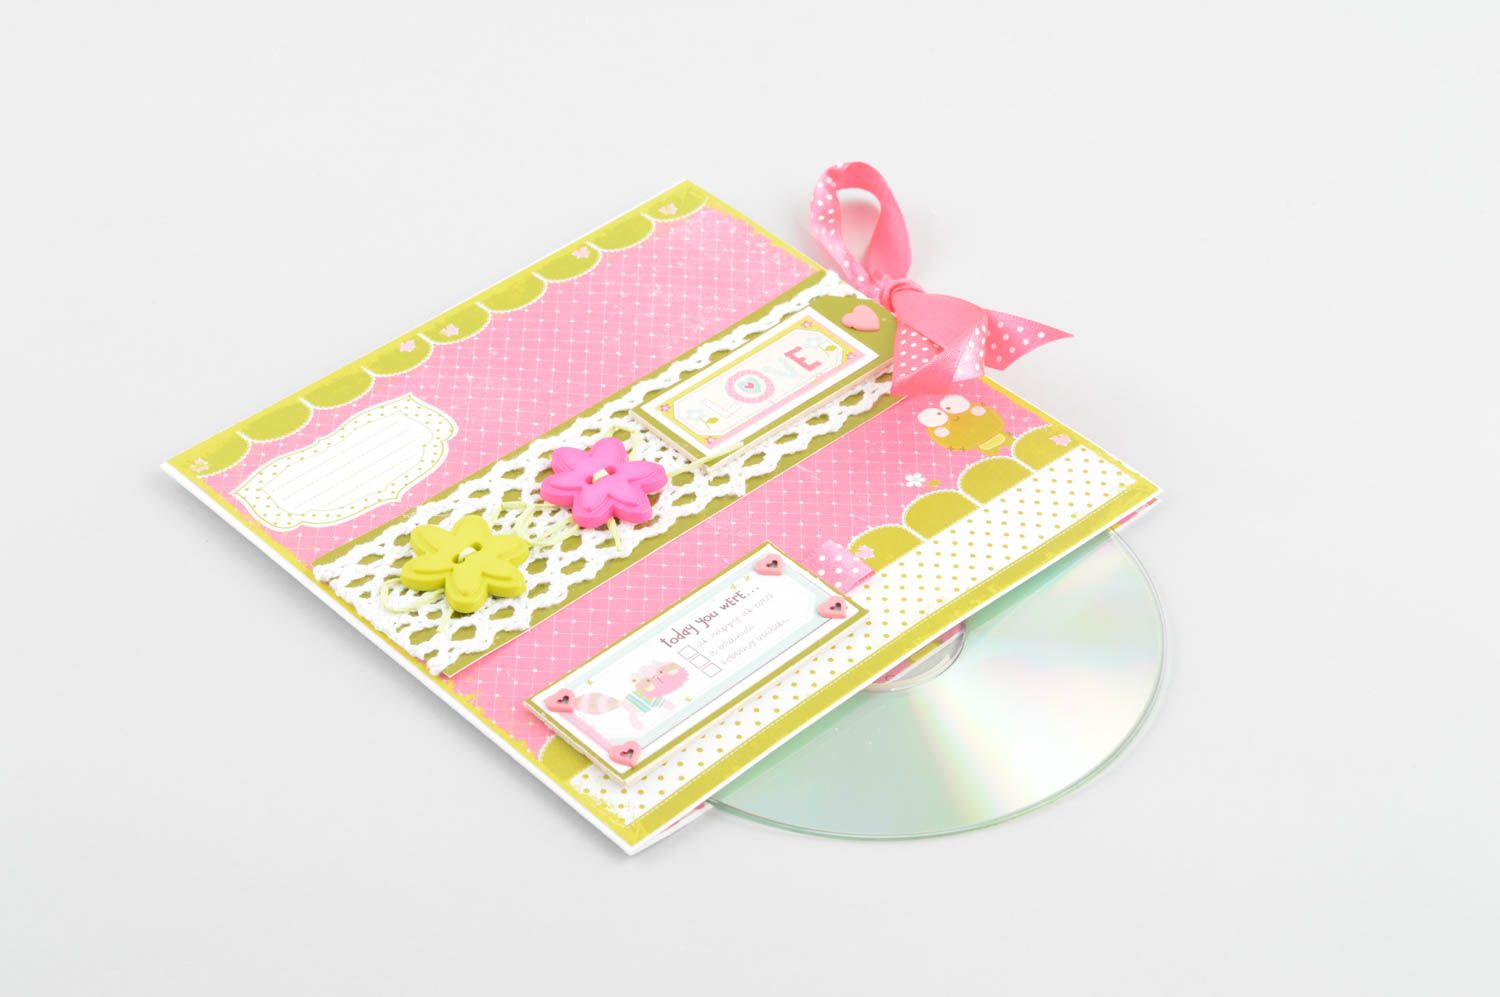 Handmade CD Hülle aus Papier kreatives Geschenk schöne Verpackung rosa foto 2